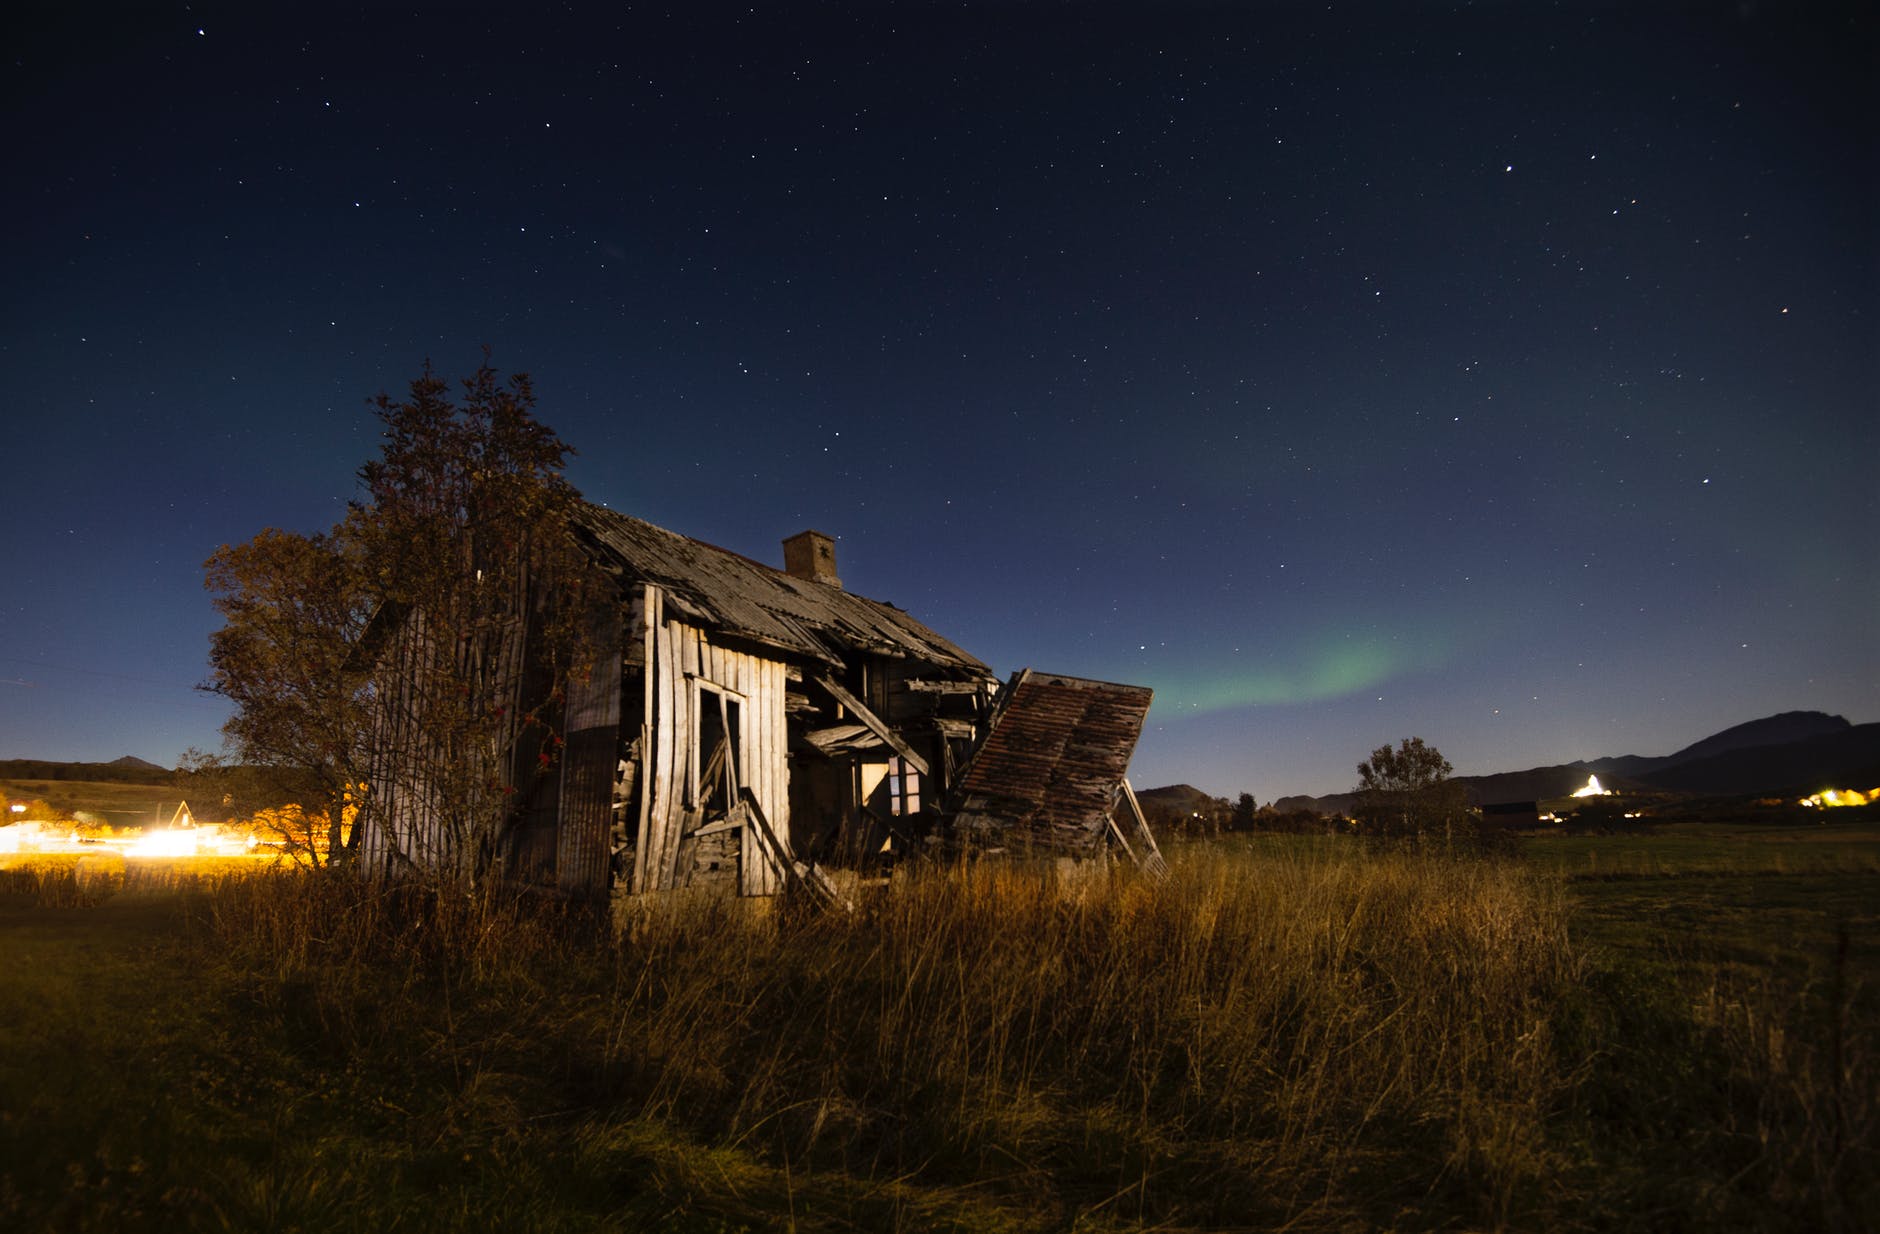 abandoned wooden barn on grassy terrain against starry night sky